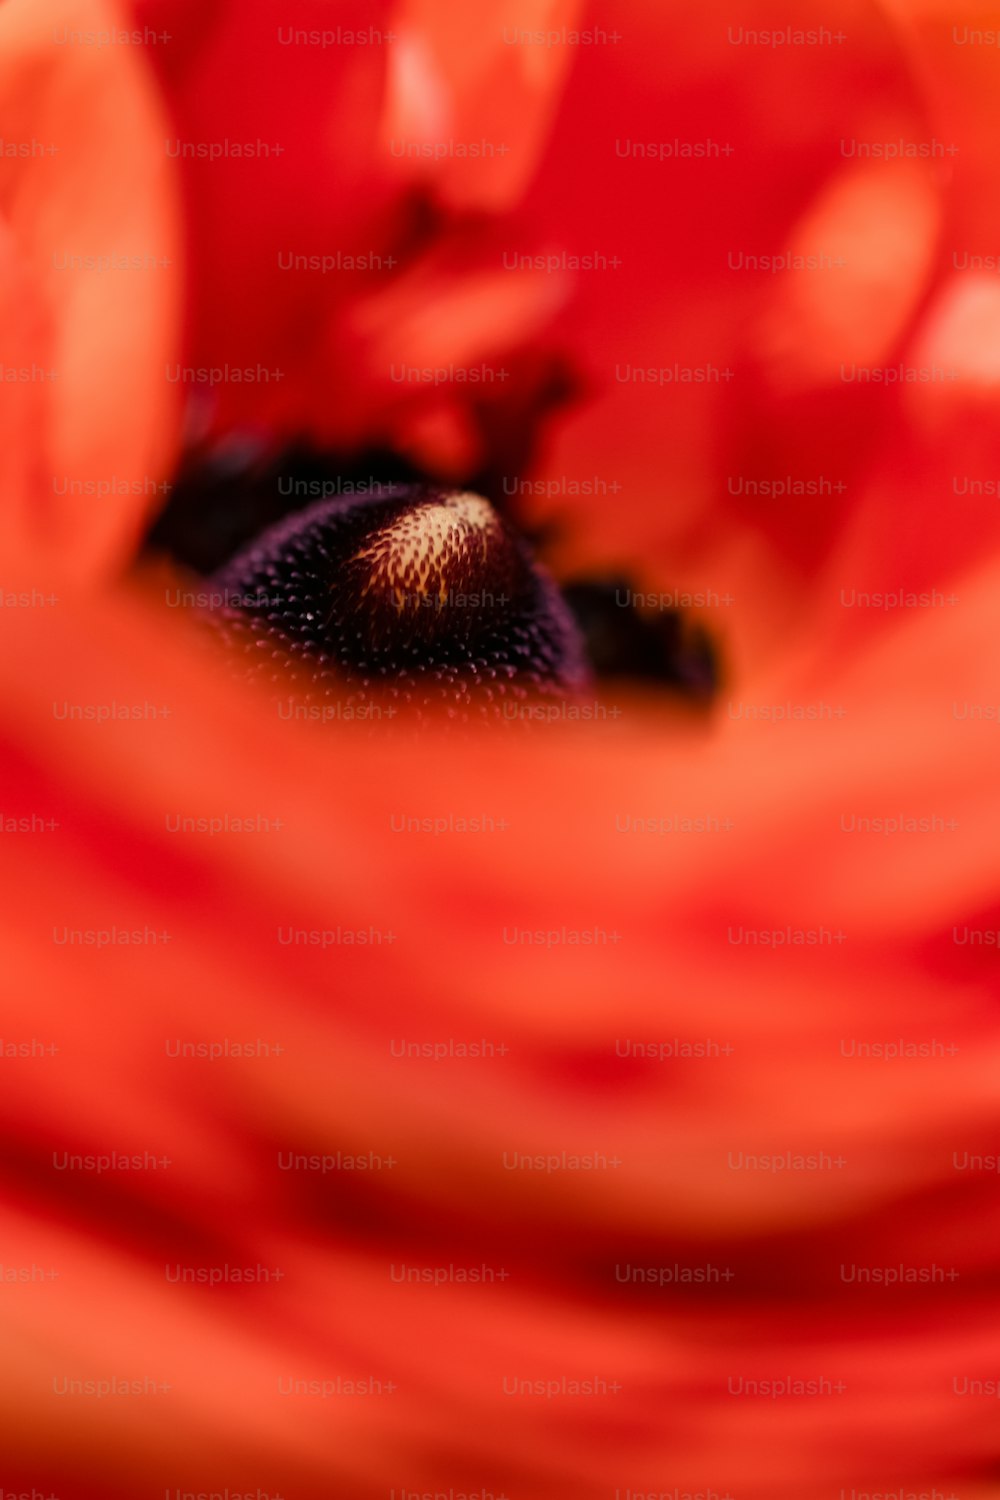 Gros plan d’une fleur rouge avec un arrière-plan flou